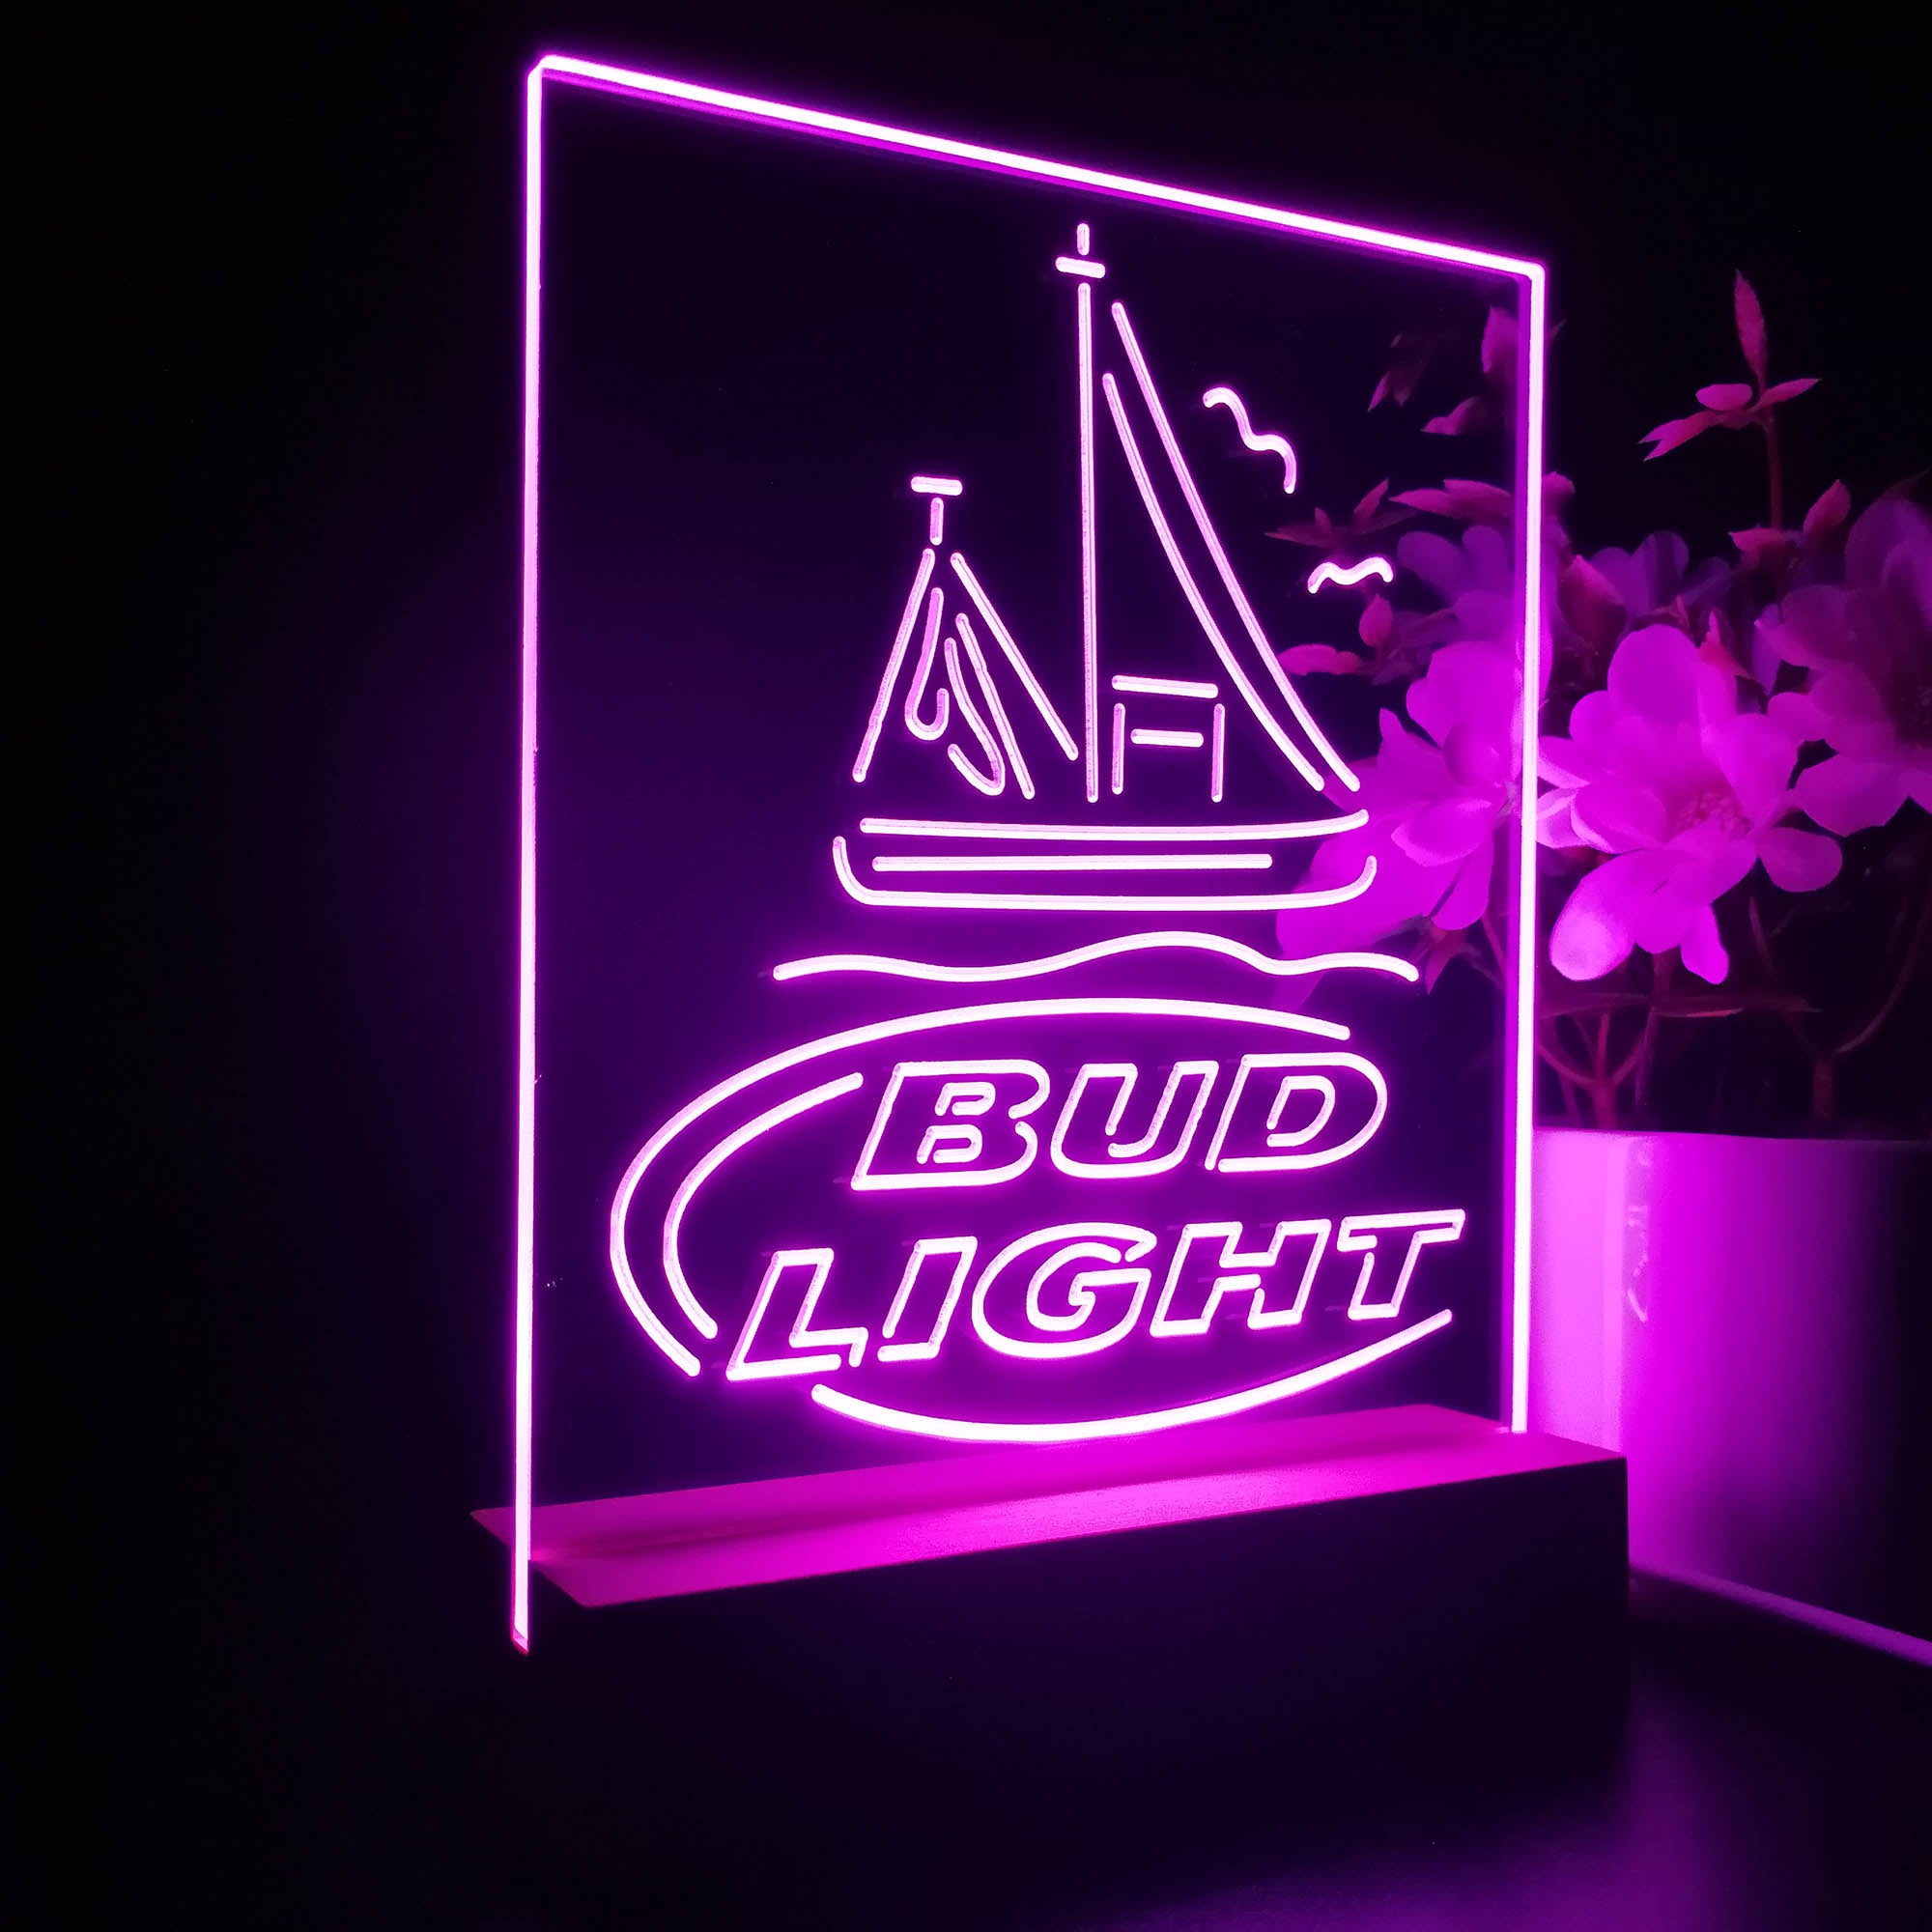 Bud Light Sail Boat 3D LED Optical Illusion Night Light Table Lamp